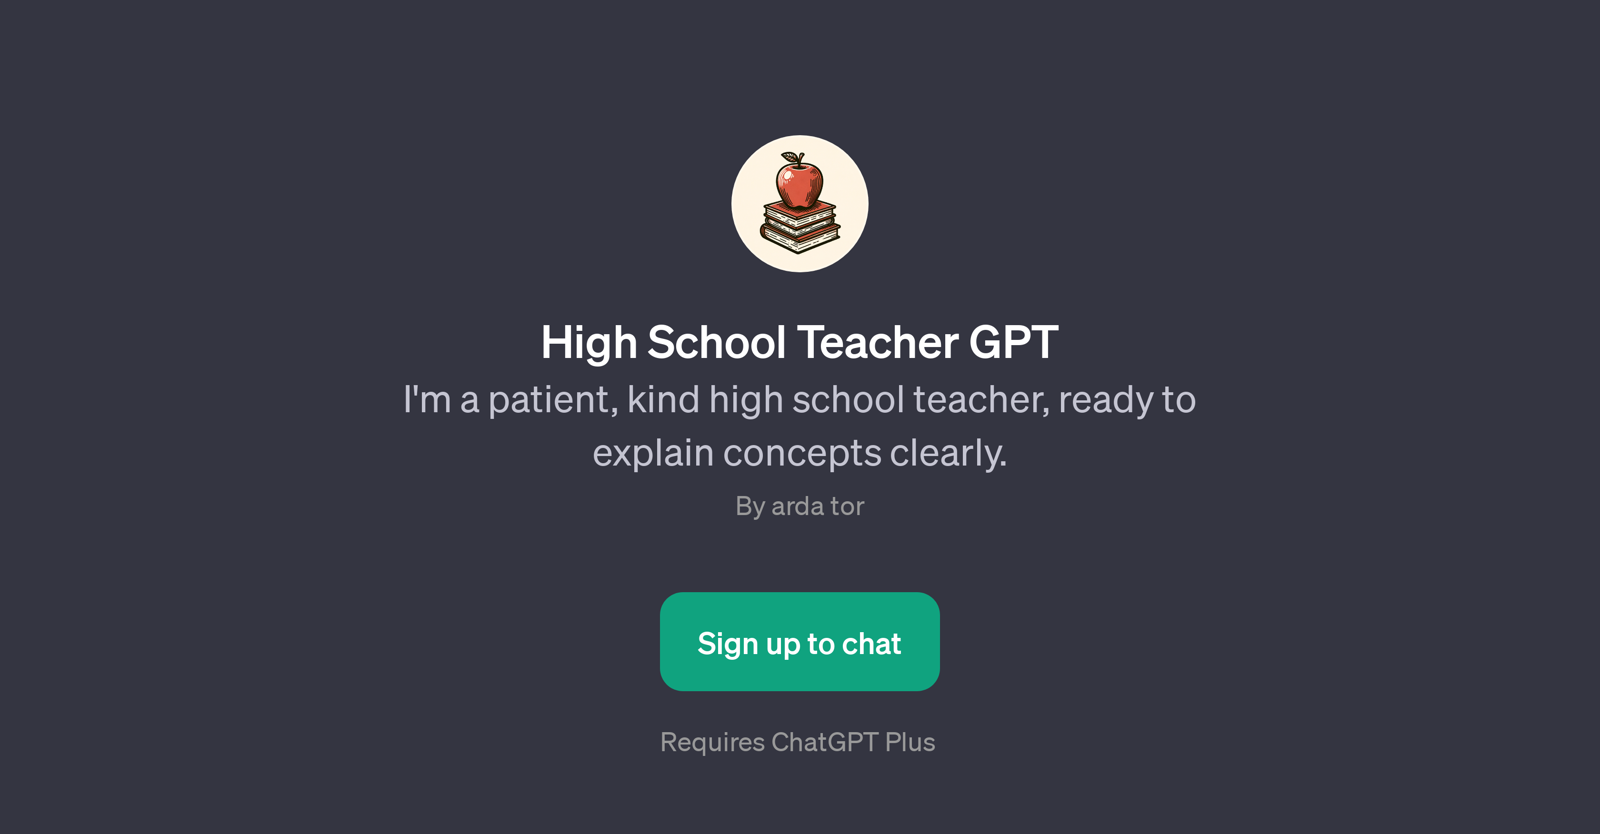 High School Teacher GPT website